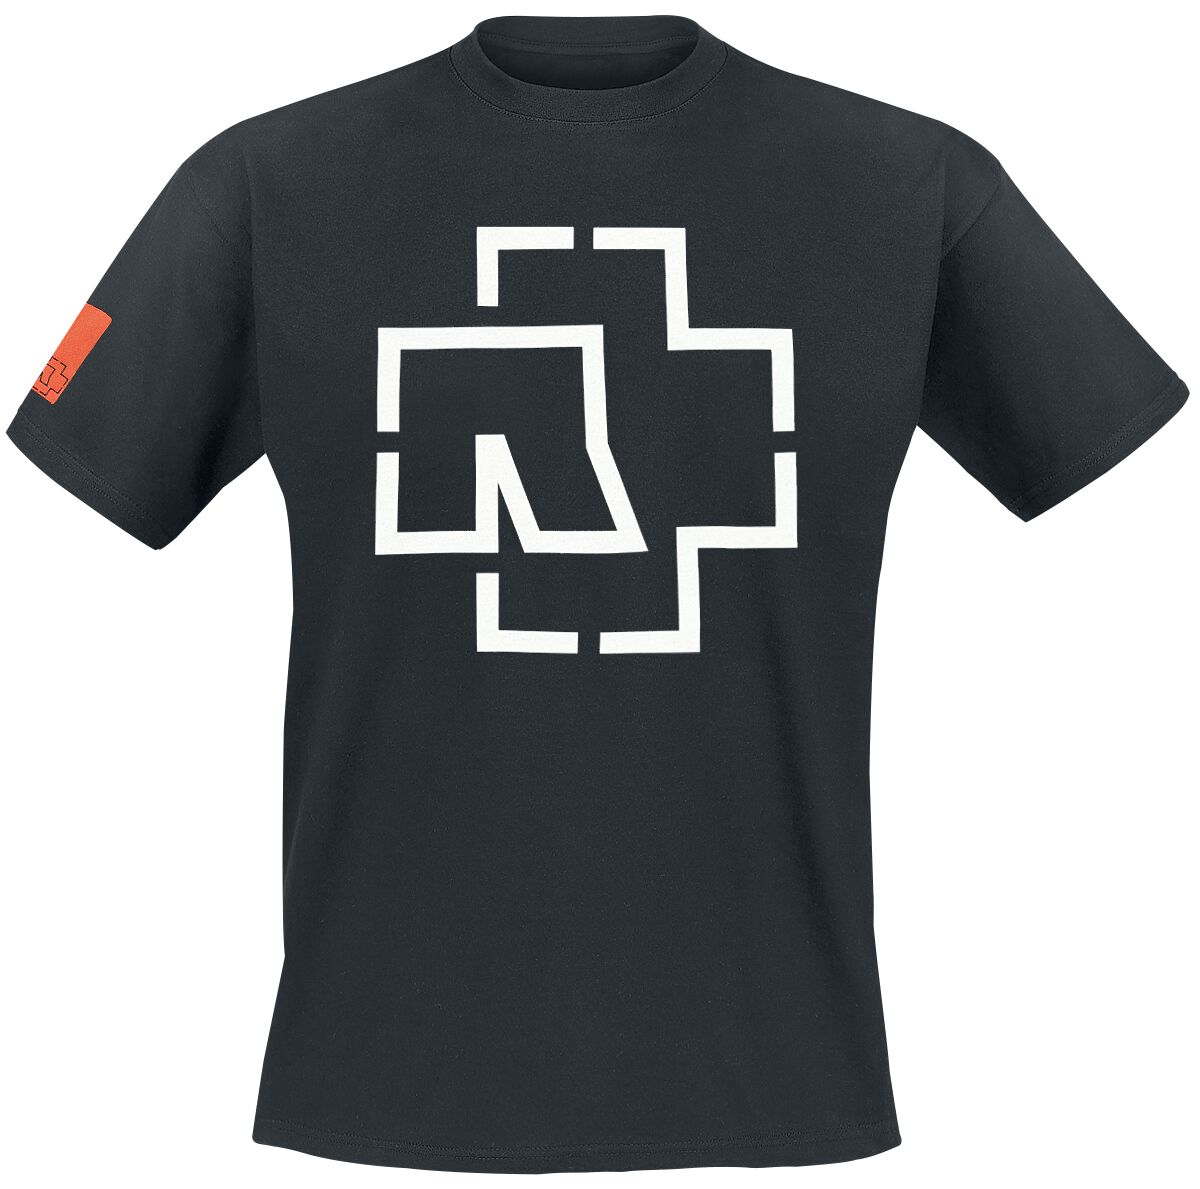 Rammstein T-Shirt - Logo - S bis 3XL - für Männer - Größe 3XL - schwarz  - Lizenziertes Merchandise!